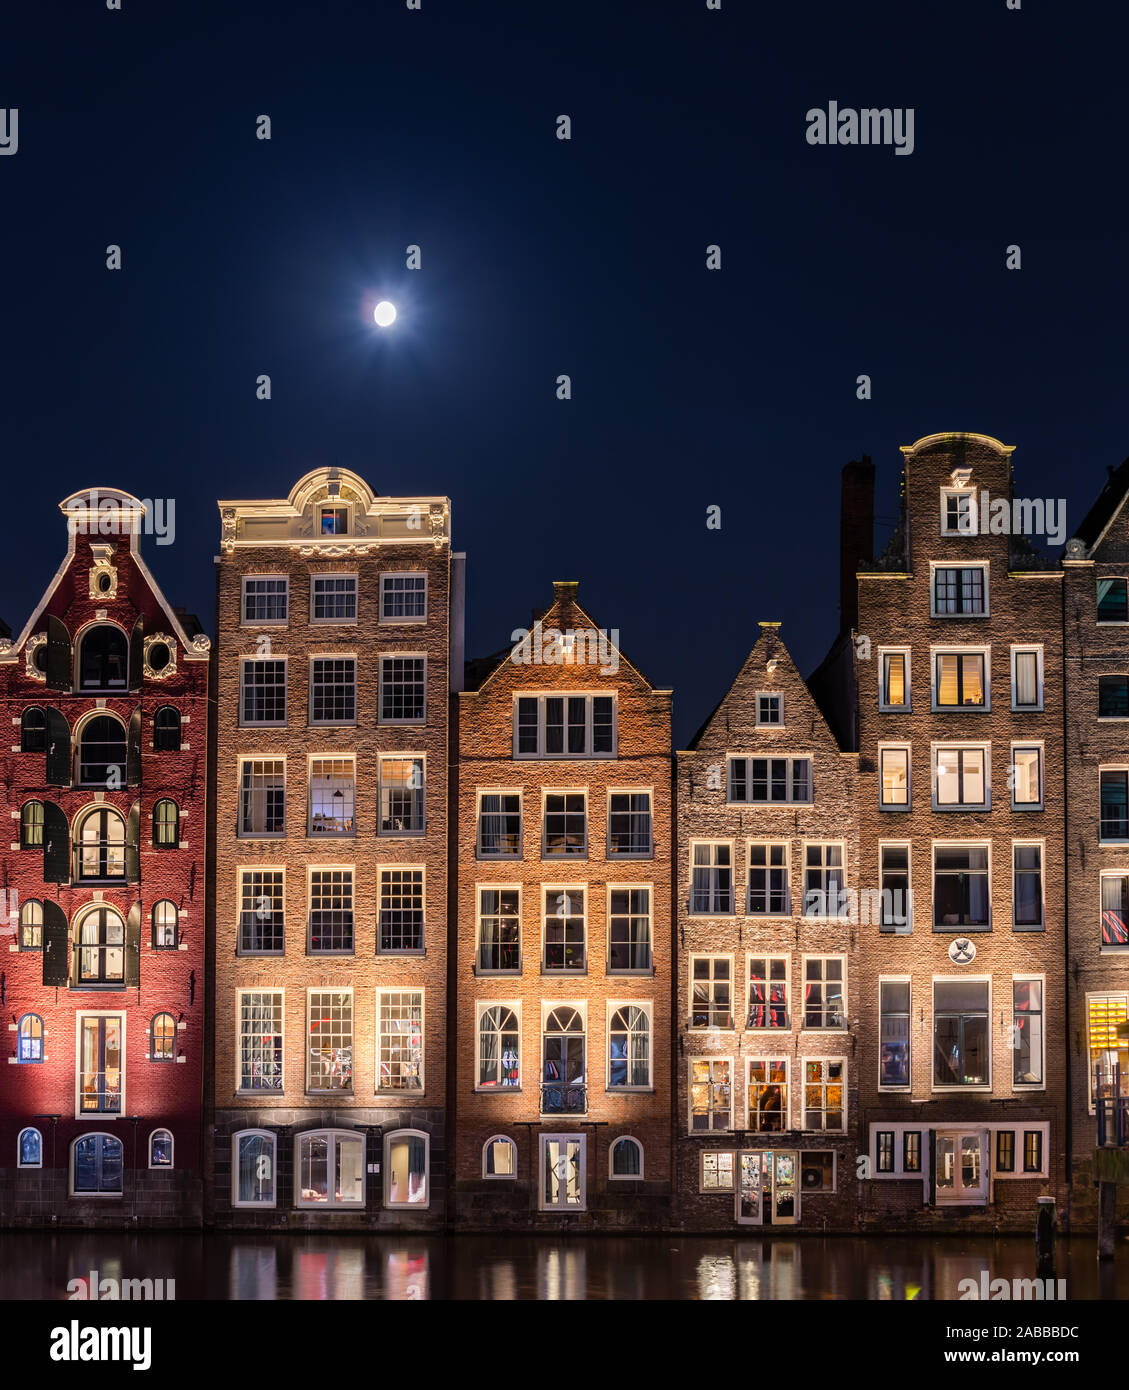 Bâtiments hollandais traditionnel à Damrak la nuit, Amsterdam, Pays-Bas Banque D'Images